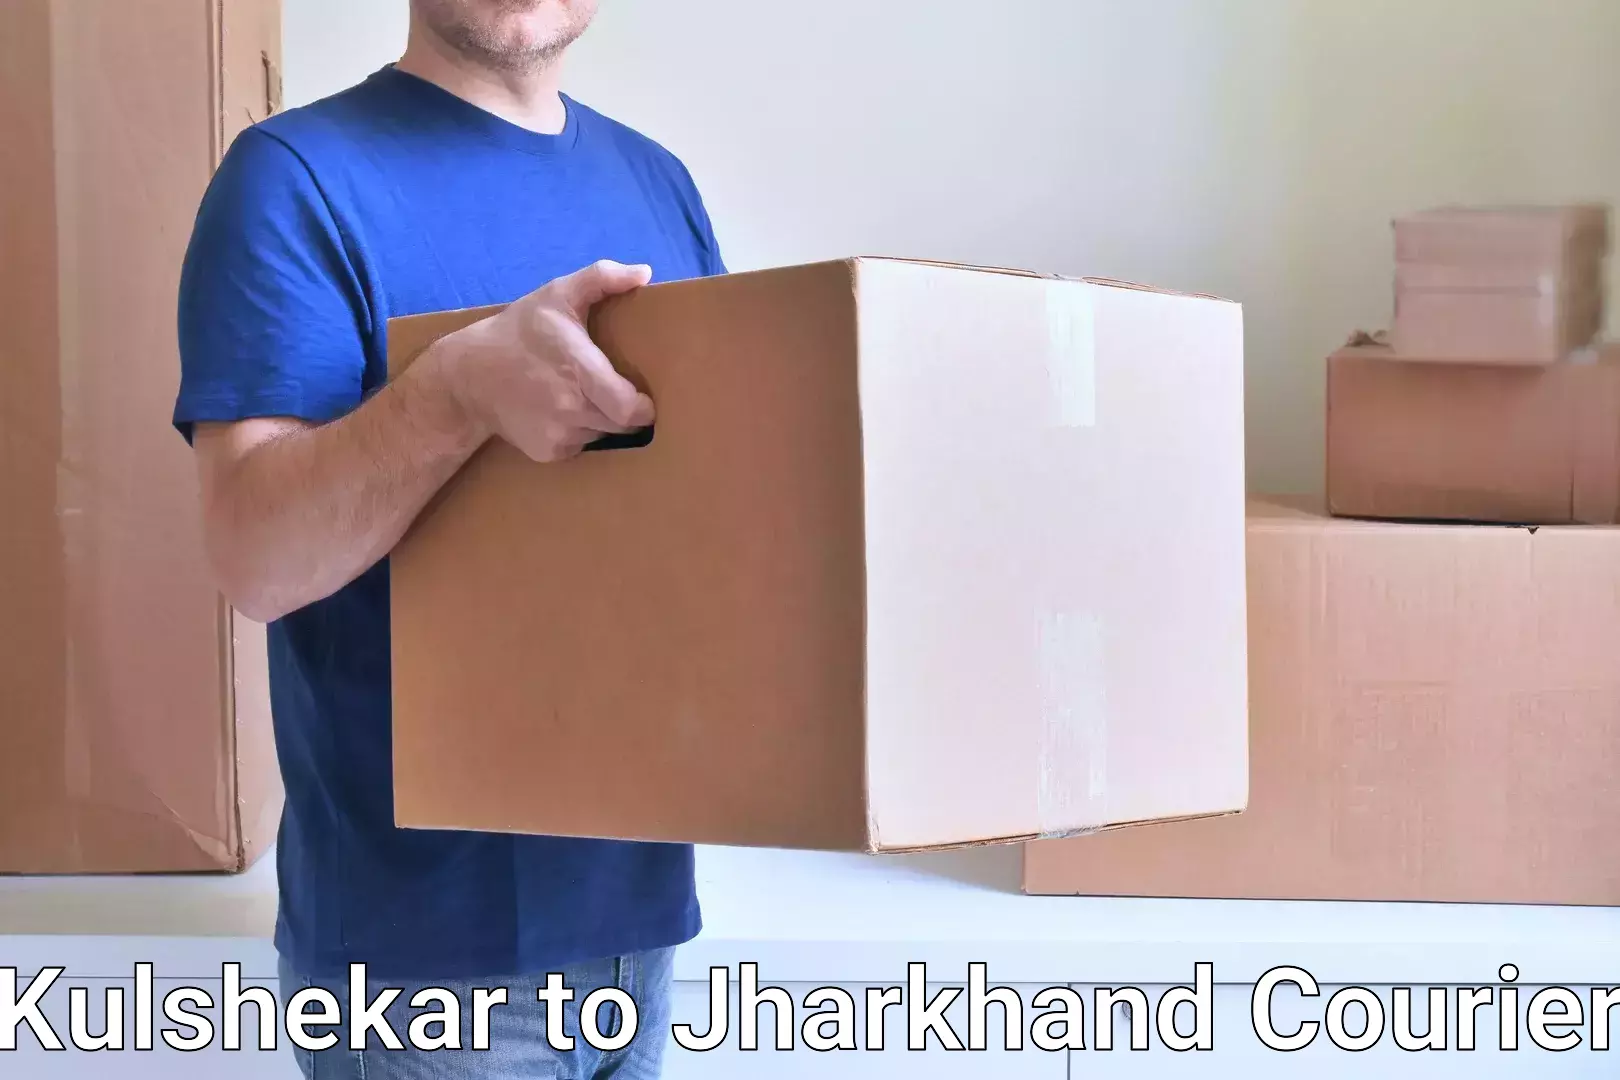 Expedited parcel delivery Kulshekar to Jamshedpur